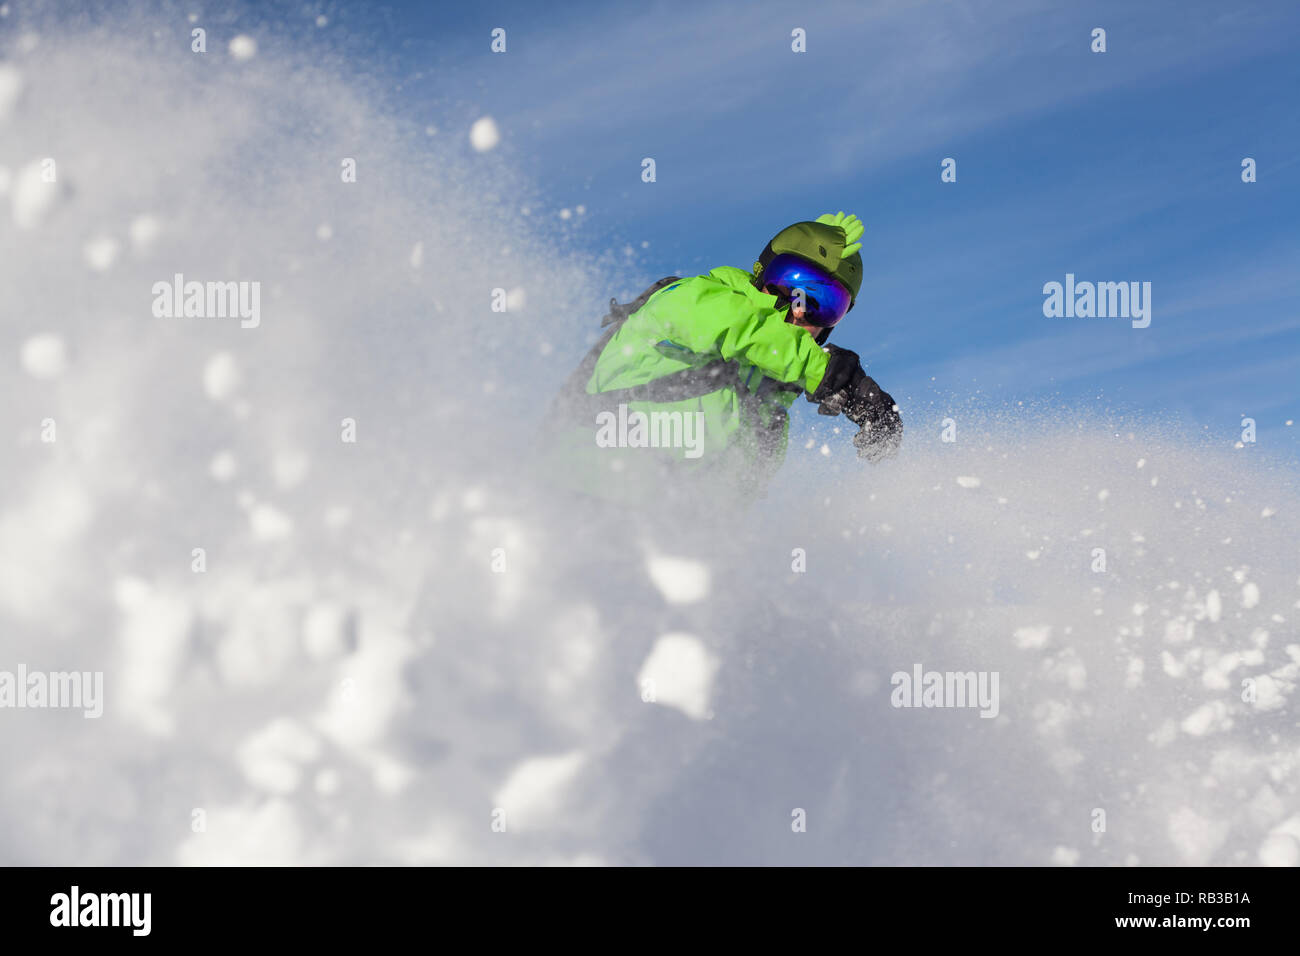 Snowboarder vestito in verde sollevando la neve mentre cancellando contro blu cielo sereno sulle pendici delle Alpi in Francia. Foto Stock